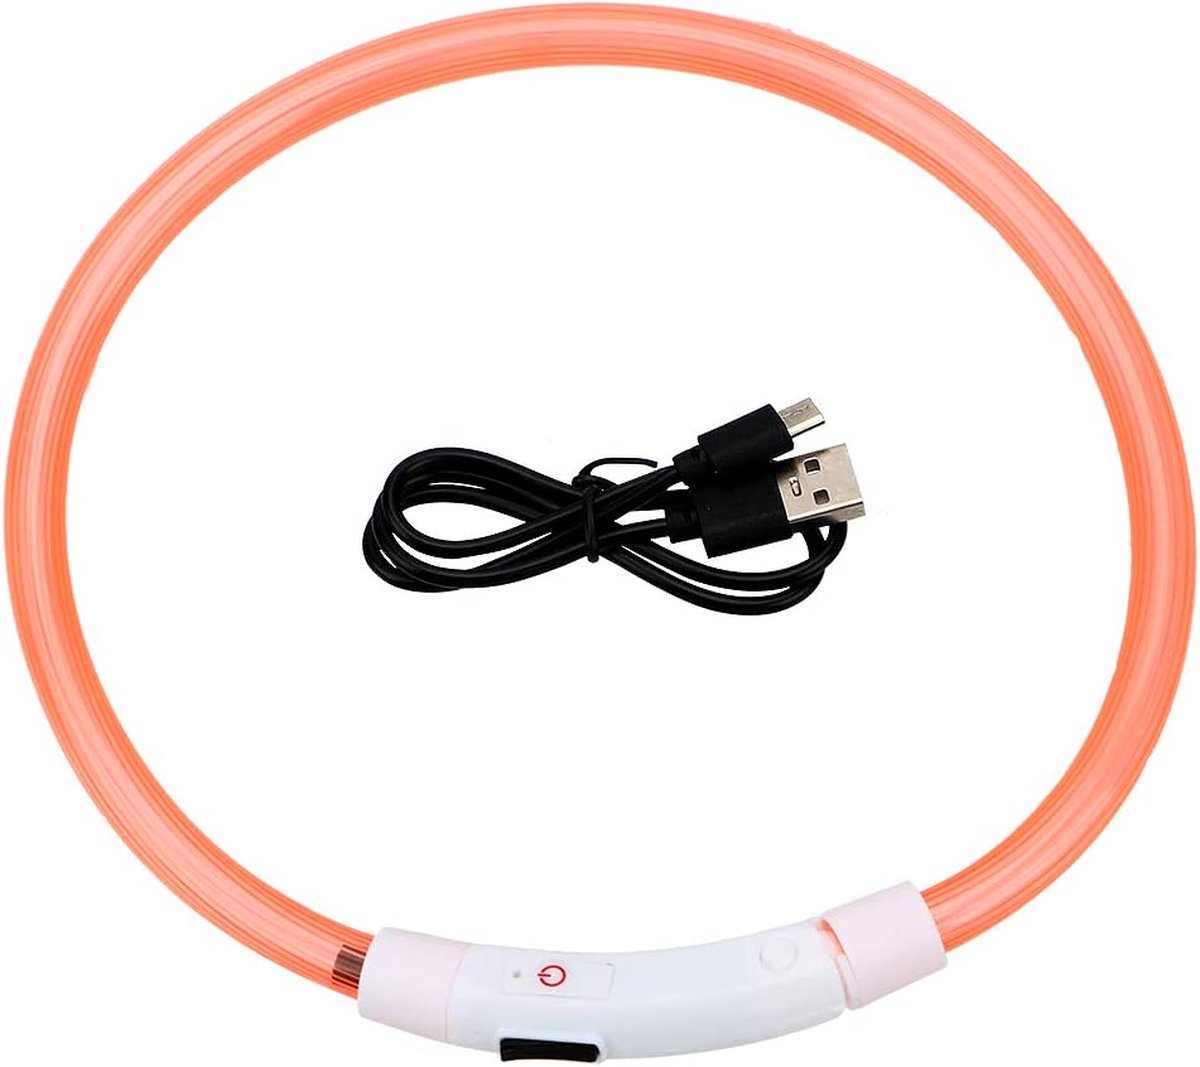 Lichtgevende Halsband Hond - USB Oplaadbaar - Oranje - 60 - 70 cm - Honden Lampje Halsband - LED Halsband Hond - Hondenverlichting